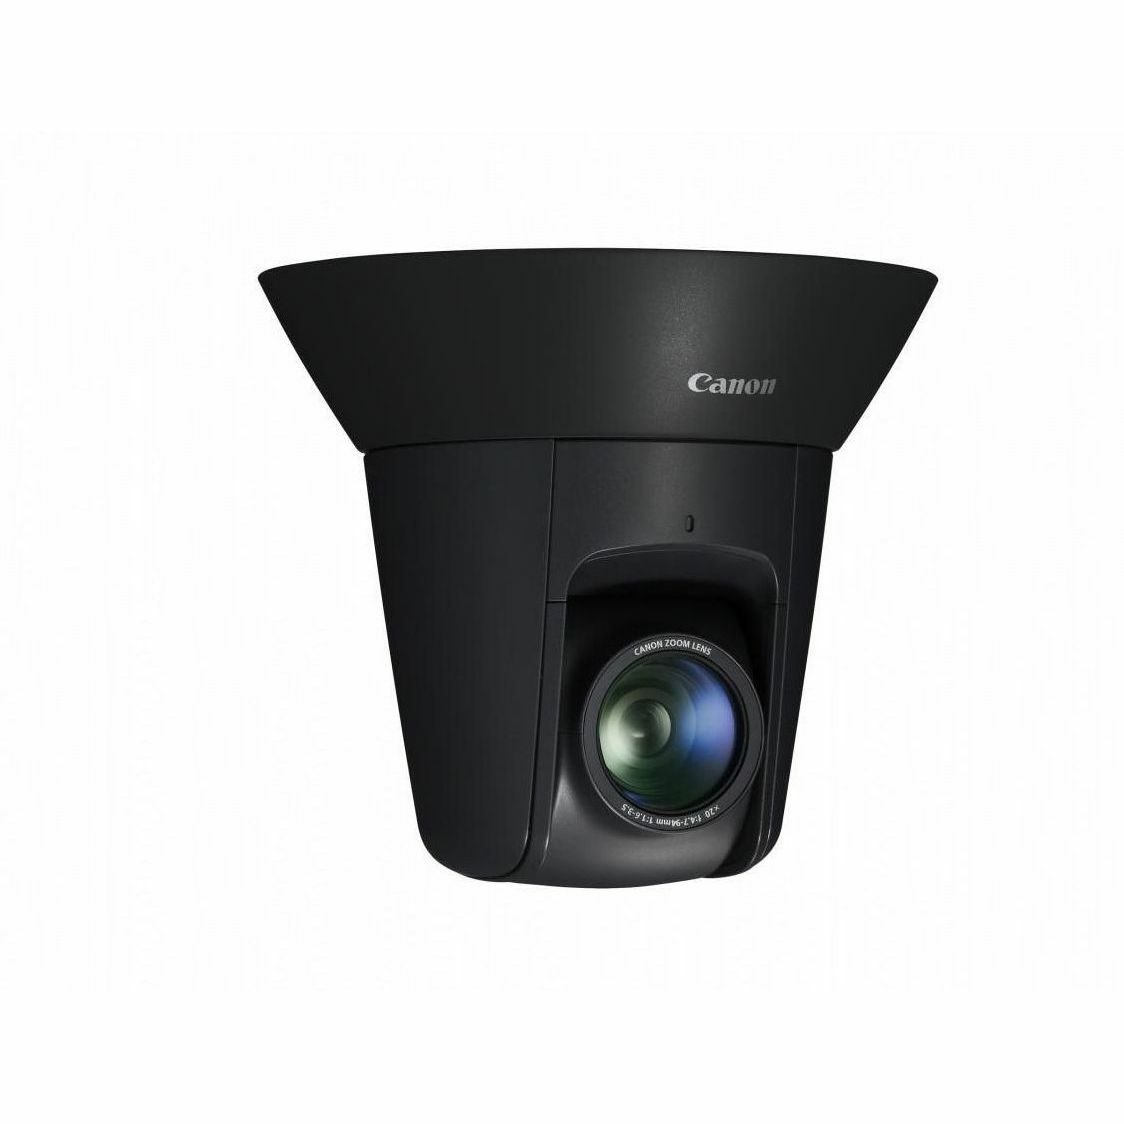 AXIS VB-M46 1.3 Megapixel Indoor Network Camera - Colour - Black